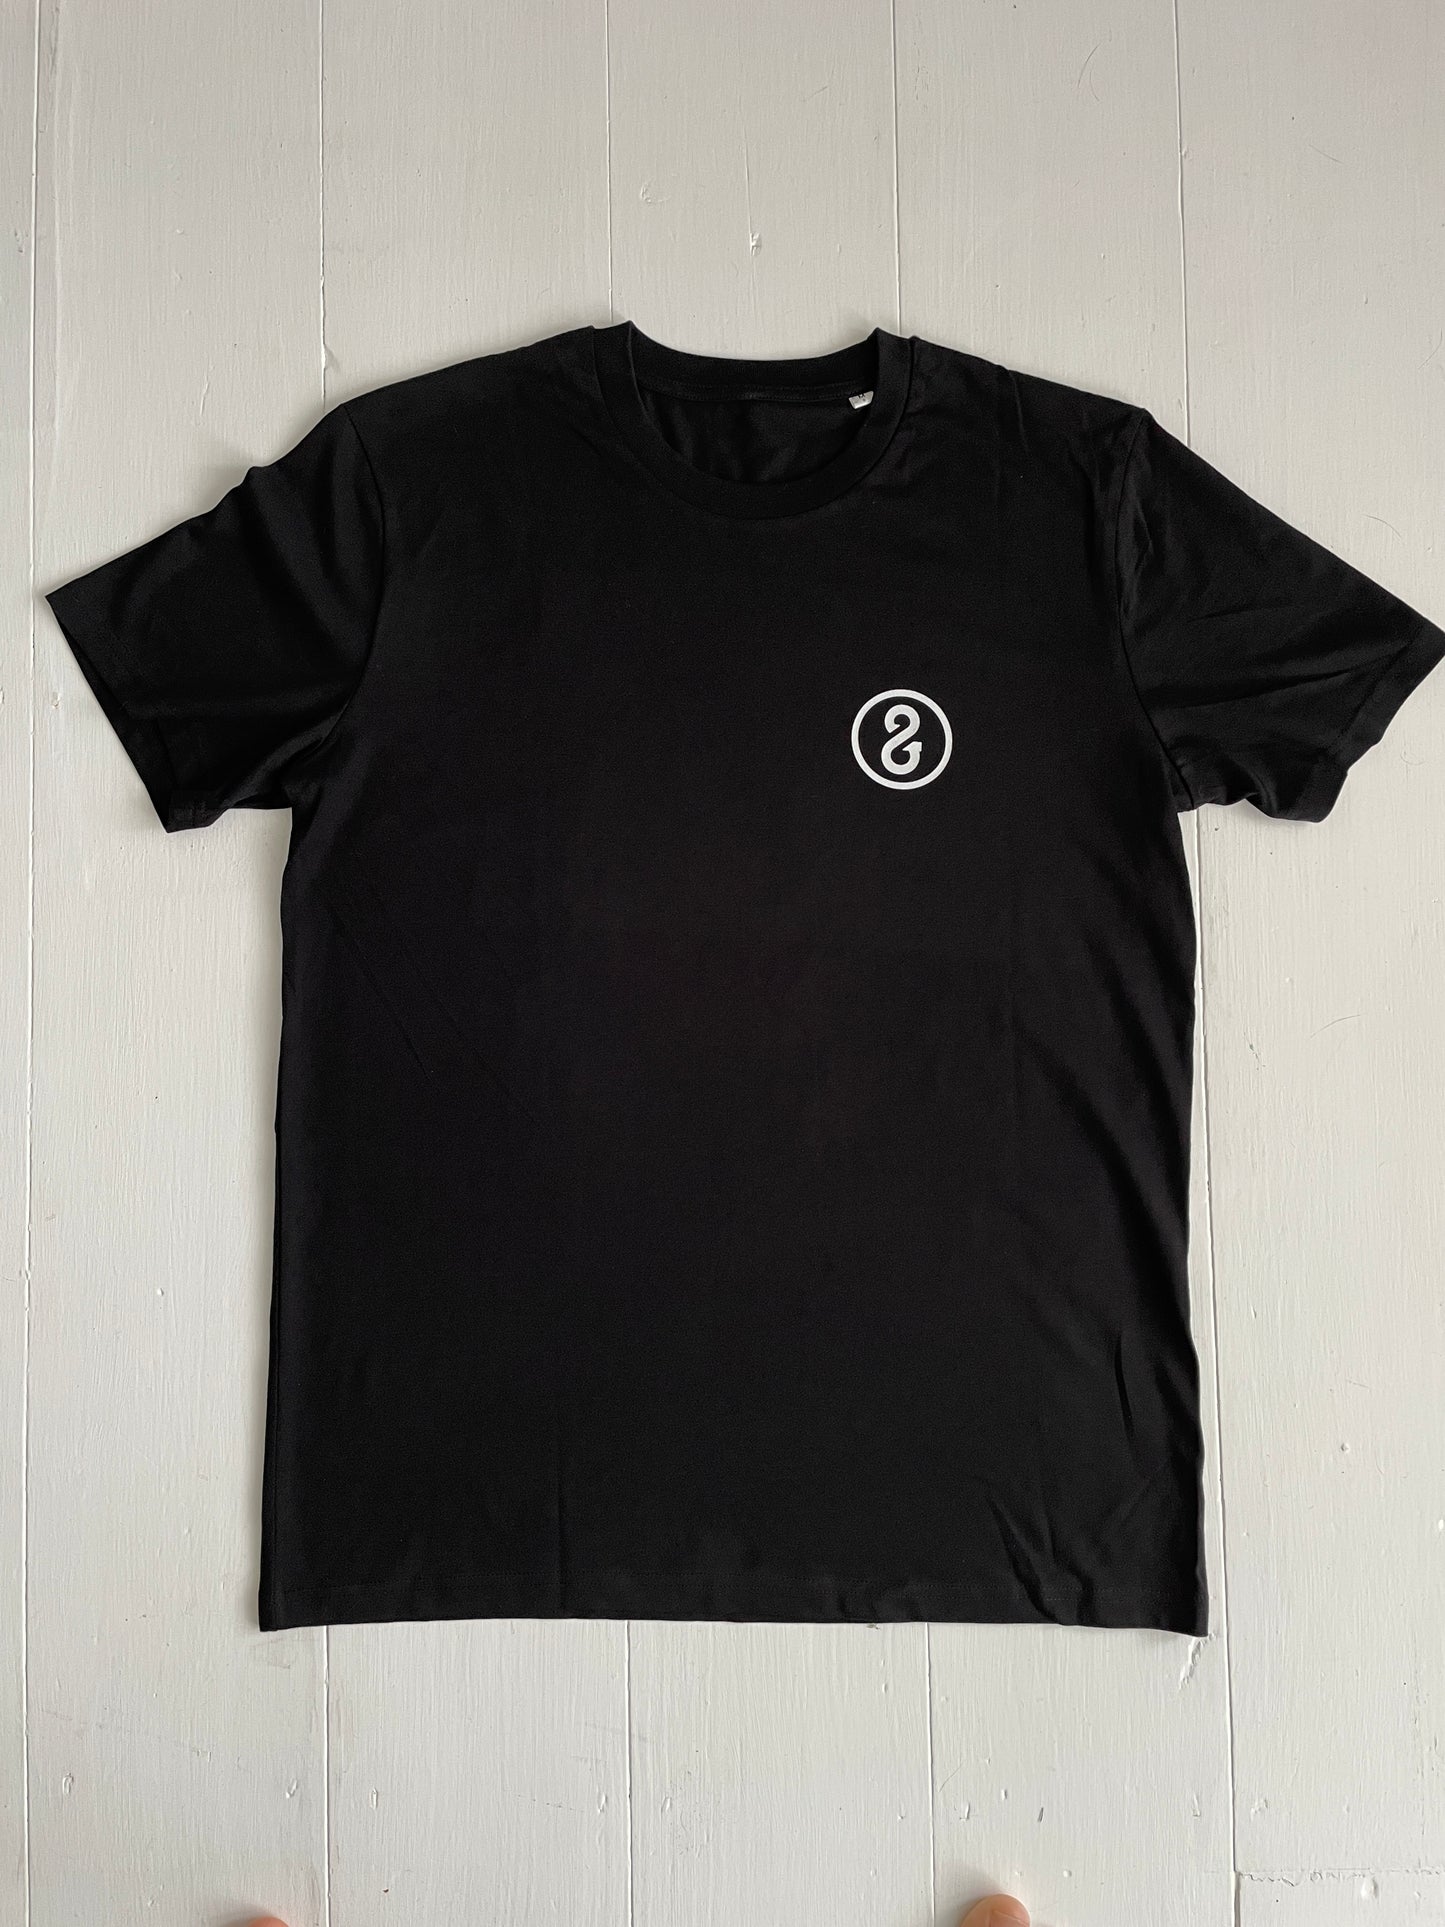 Circle T-Shirt